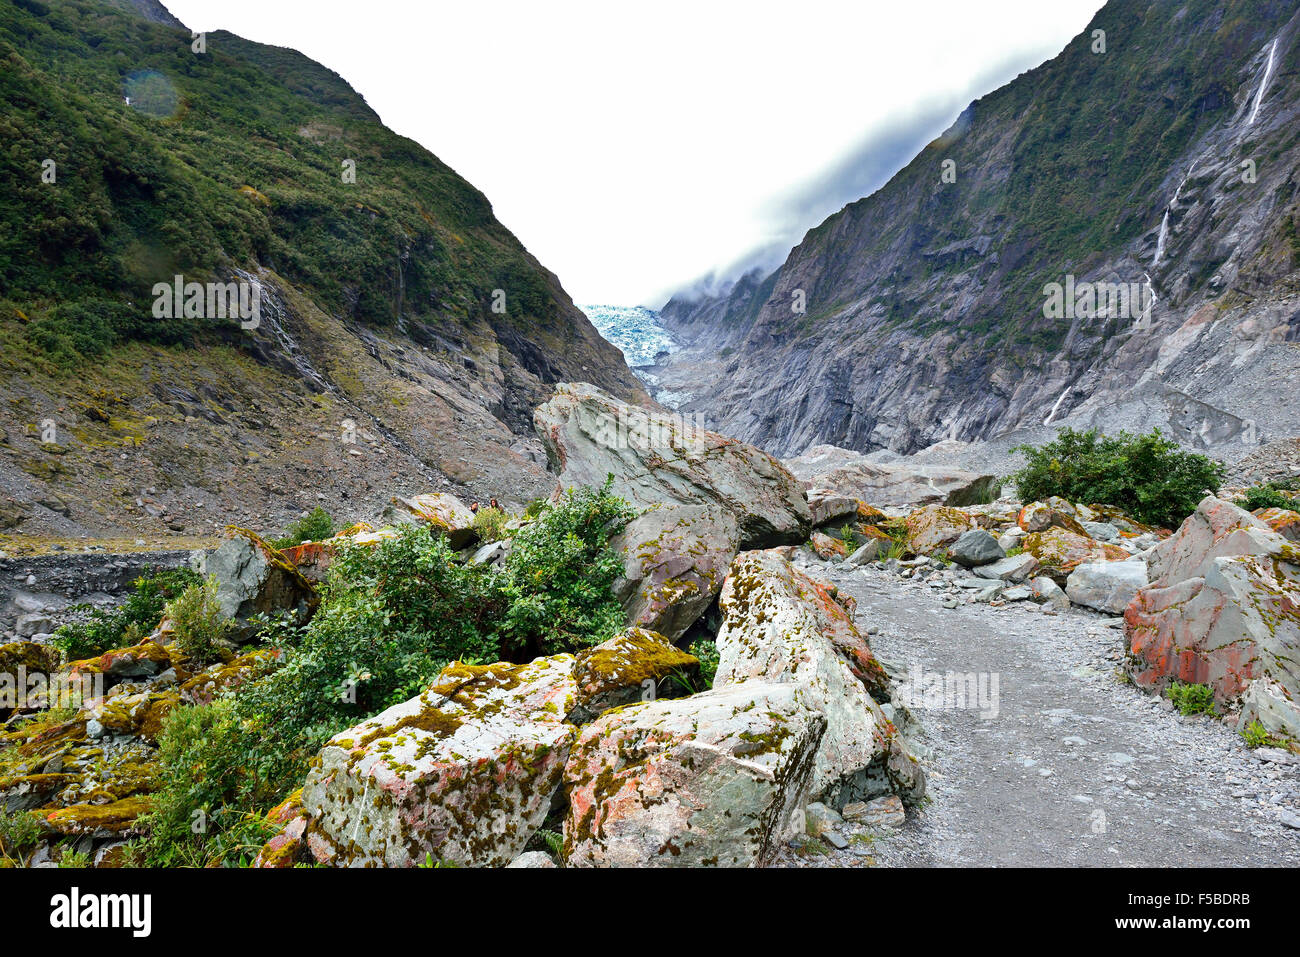 Percorso a piedi lungo un percorso roccioso lungo il fiume Waiho, che si snoda lungo le acque del ghiacciaio fino all'estremità del ghiacciaio Franz Josef, Nuova Zelanda Foto Stock